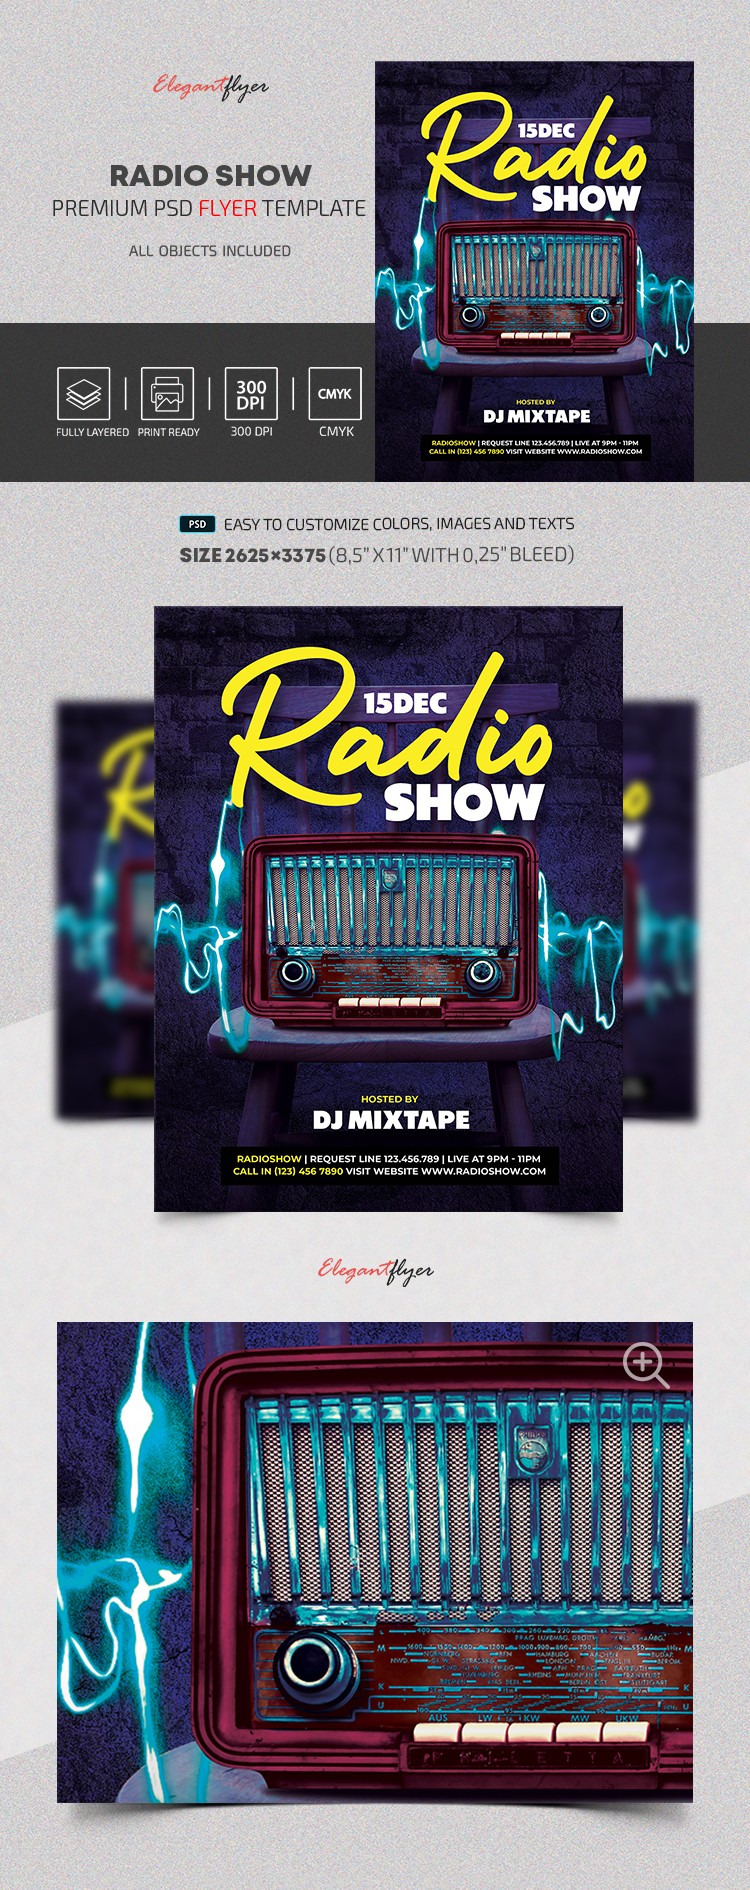 Radio Show Flyer by ElegantFlyer